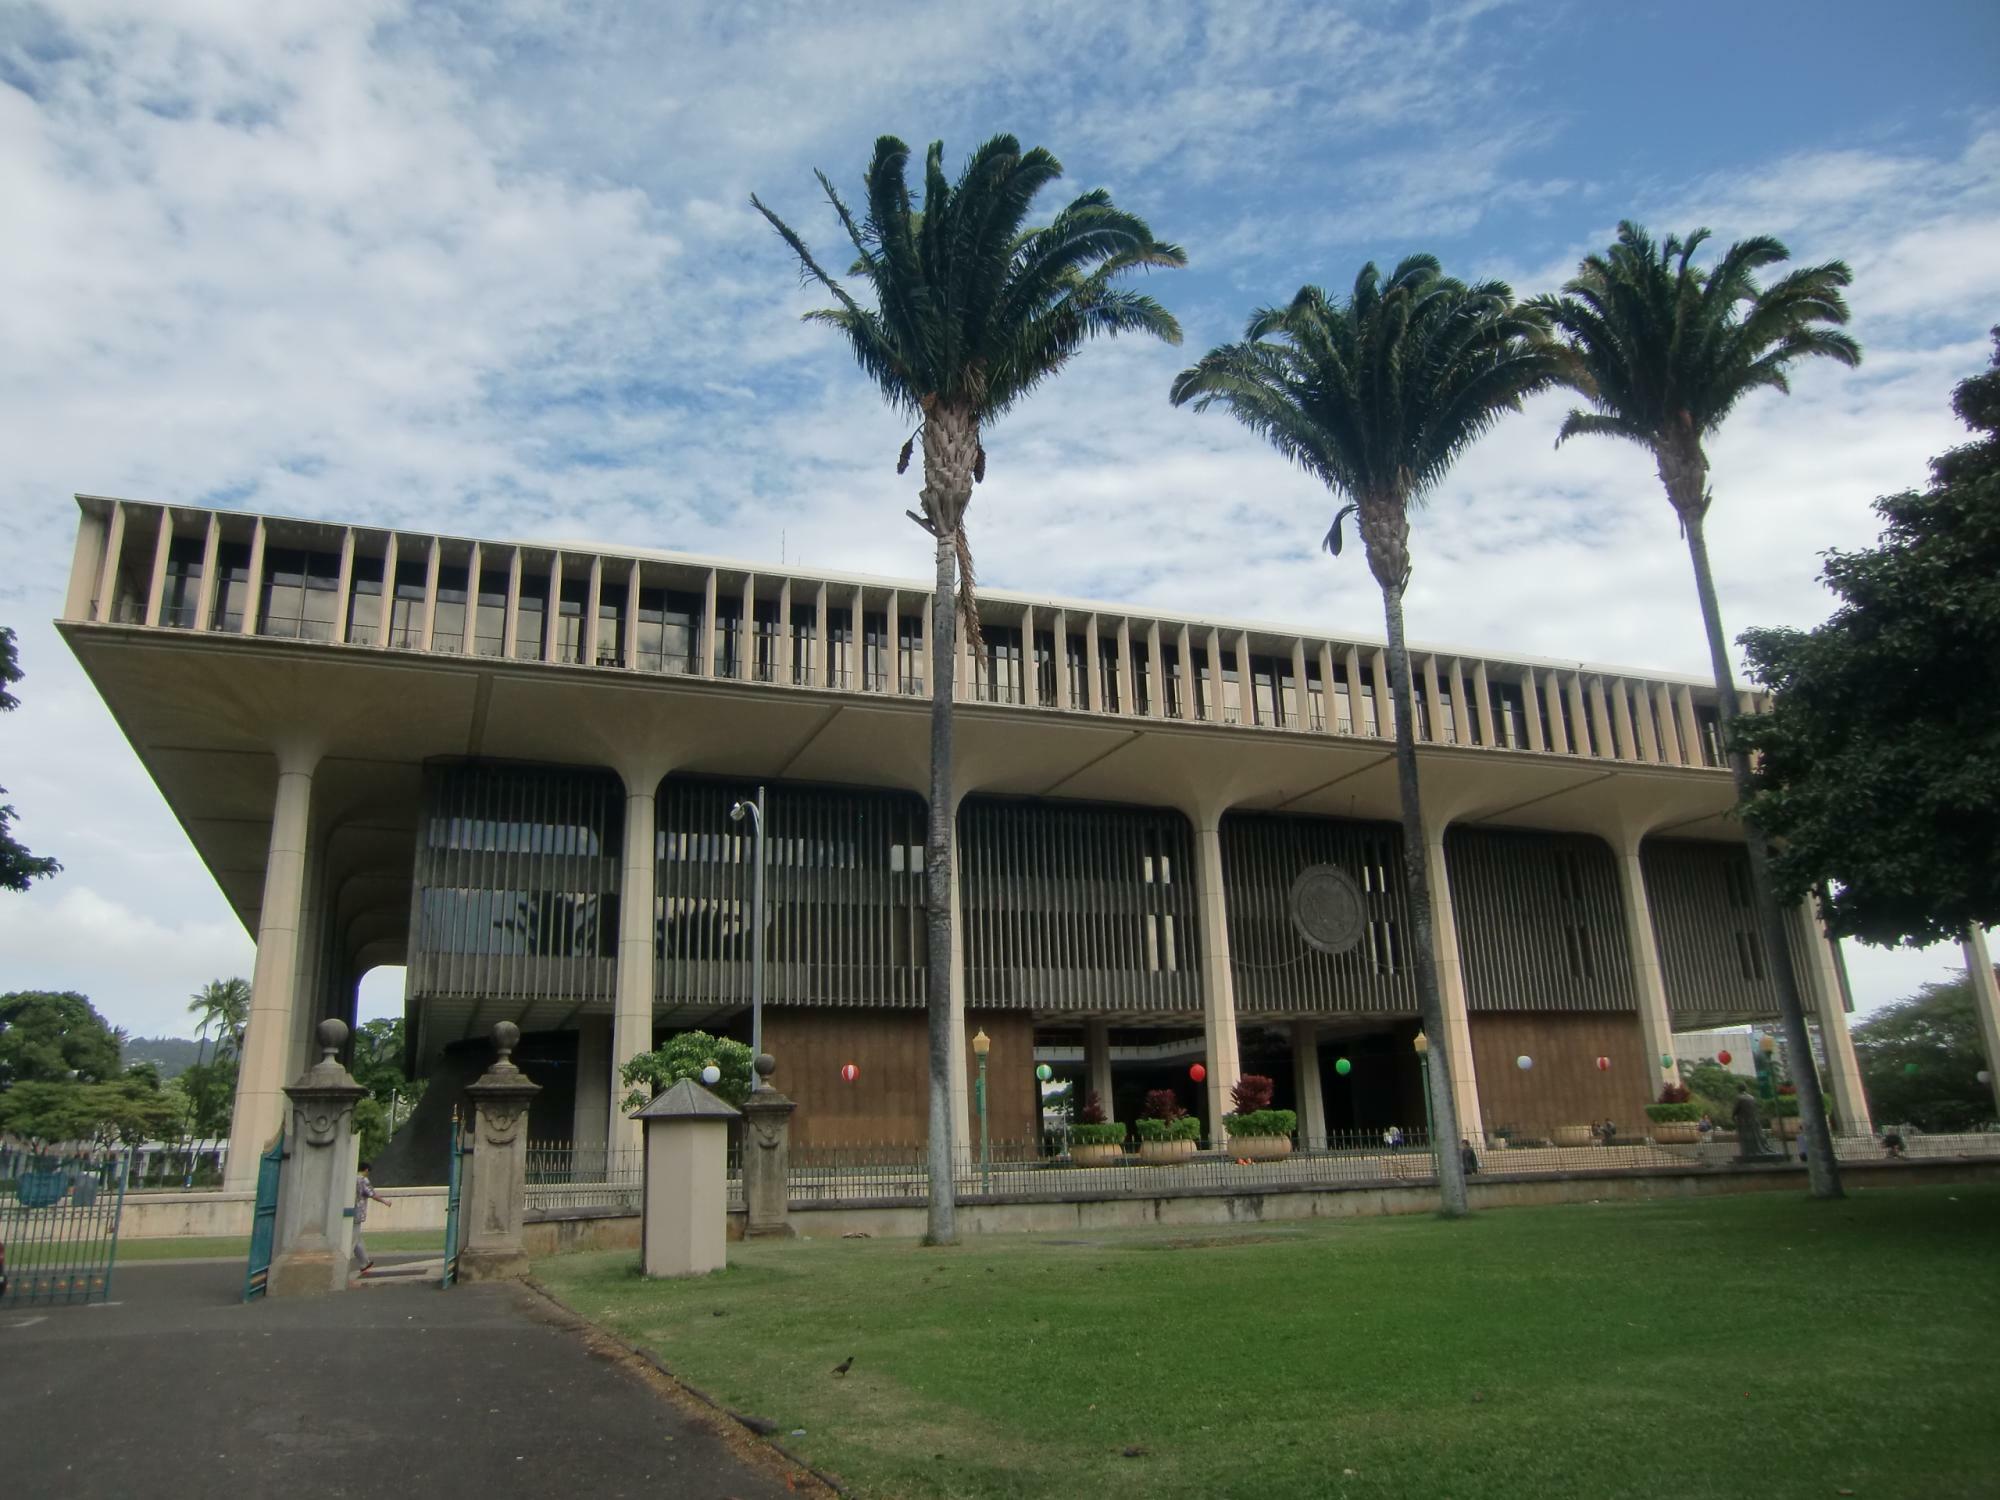 ハワイ州・ホノルル市内、ダウンタウンエリアにあるハワイ州庁舎。州庁舎の建物はハワイ州の自然・文化的な特徴が取り入れられており、椰子の木、太平洋、火山、ハイビスカス等がイメージされた（2014年撮影）。